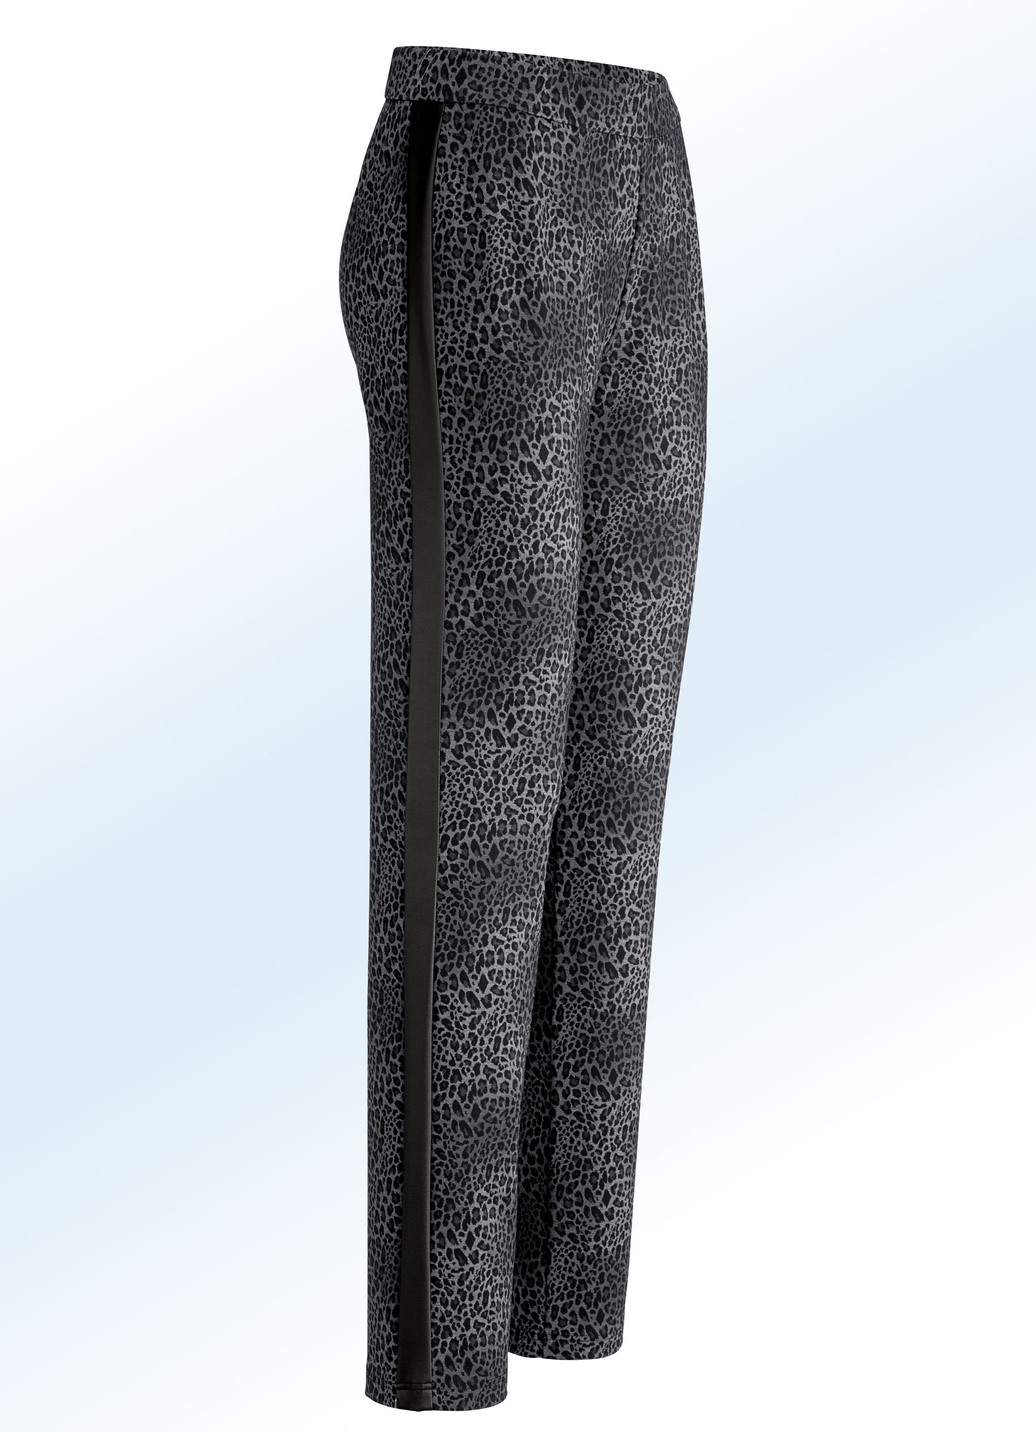 Hose in aktueller Leo-Dessinierung, Grau-Schwarz, Größe 40 von KLAUS MODELLE